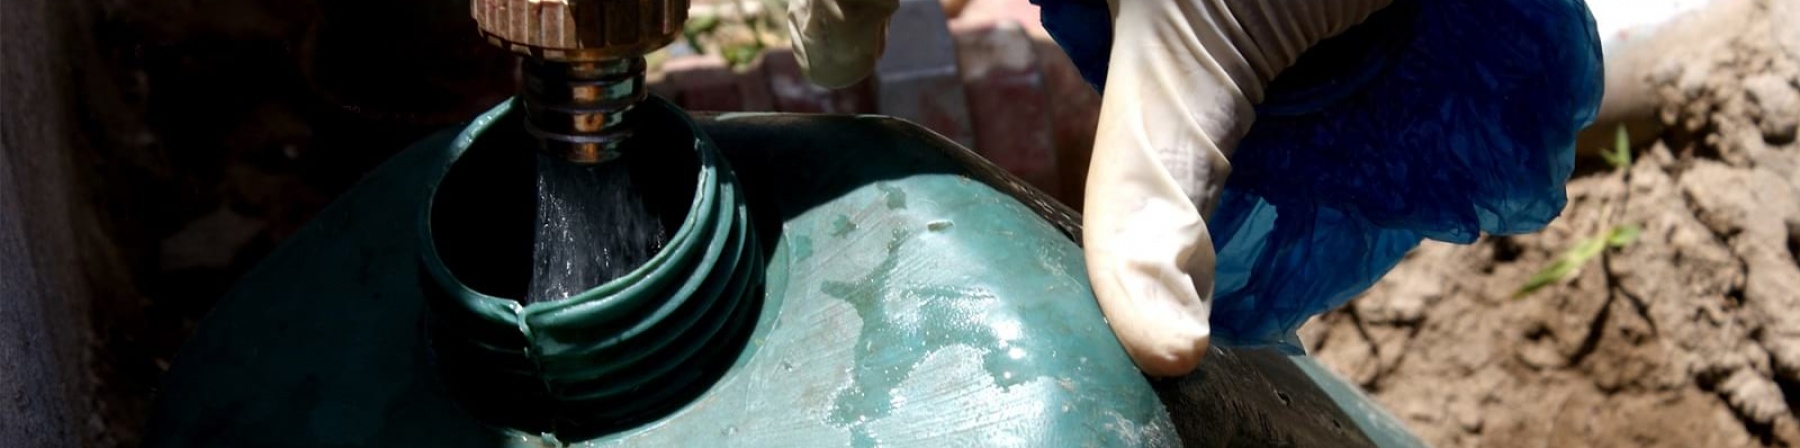 una mano con guanto in lattice apre rubinetto sopra tanica in plastica